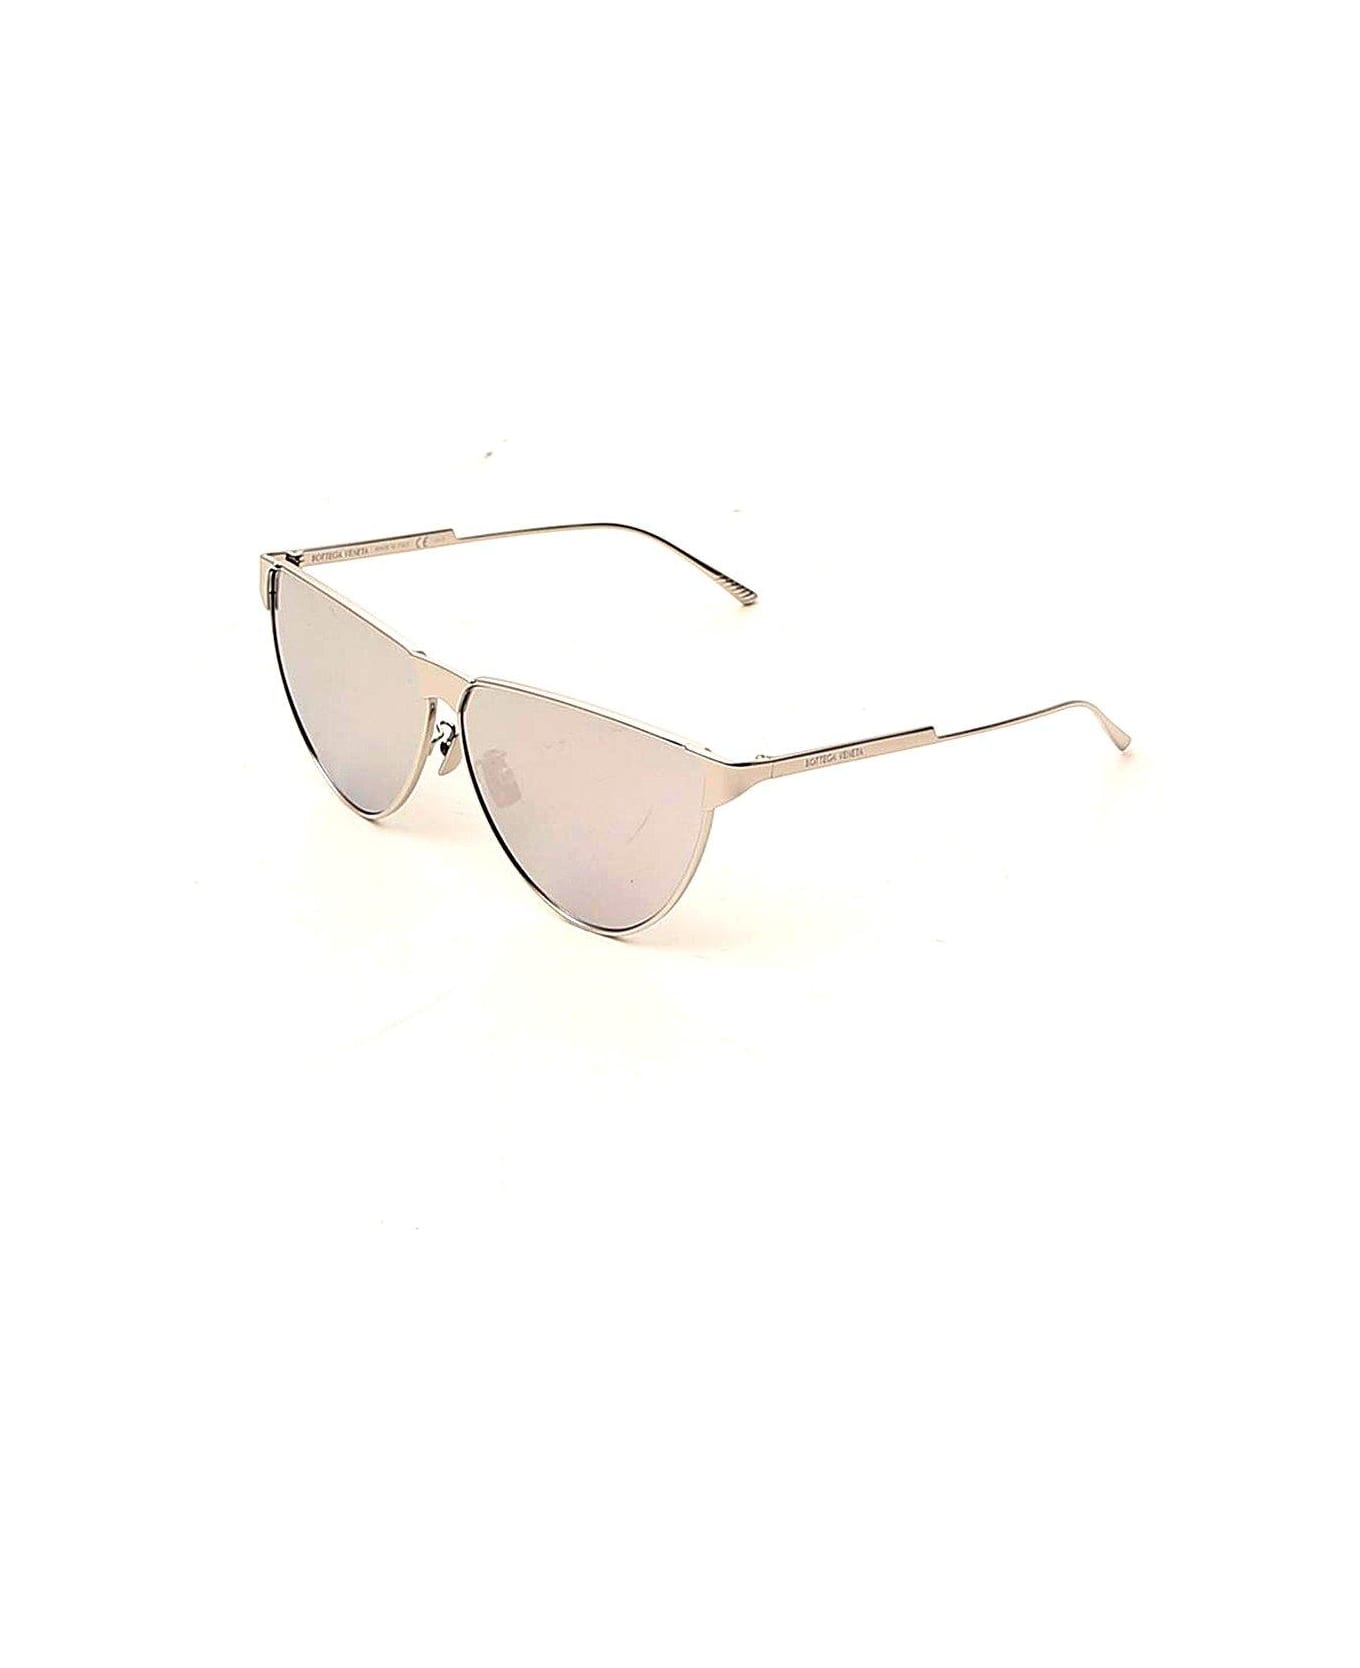 Bottega Veneta Aviator Sunglasses - SILVER